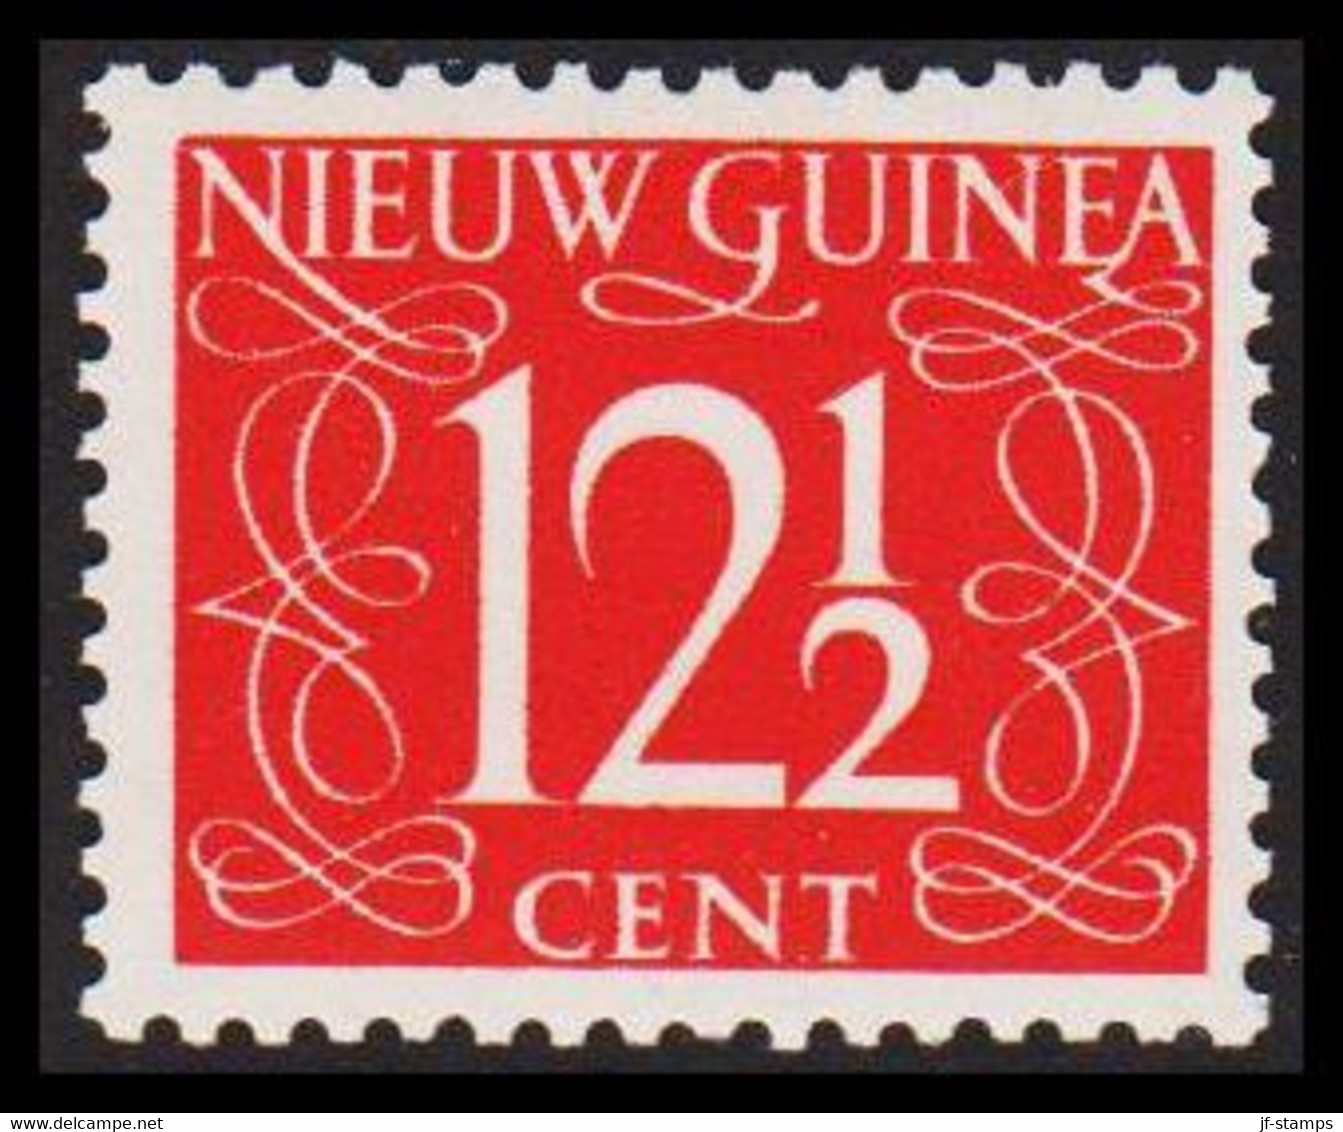 1950. NIEUW GUINEA. Nummerals- Type 12½ CENT Hinged.  - JF529322 - Nouvelle Guinée Néerlandaise